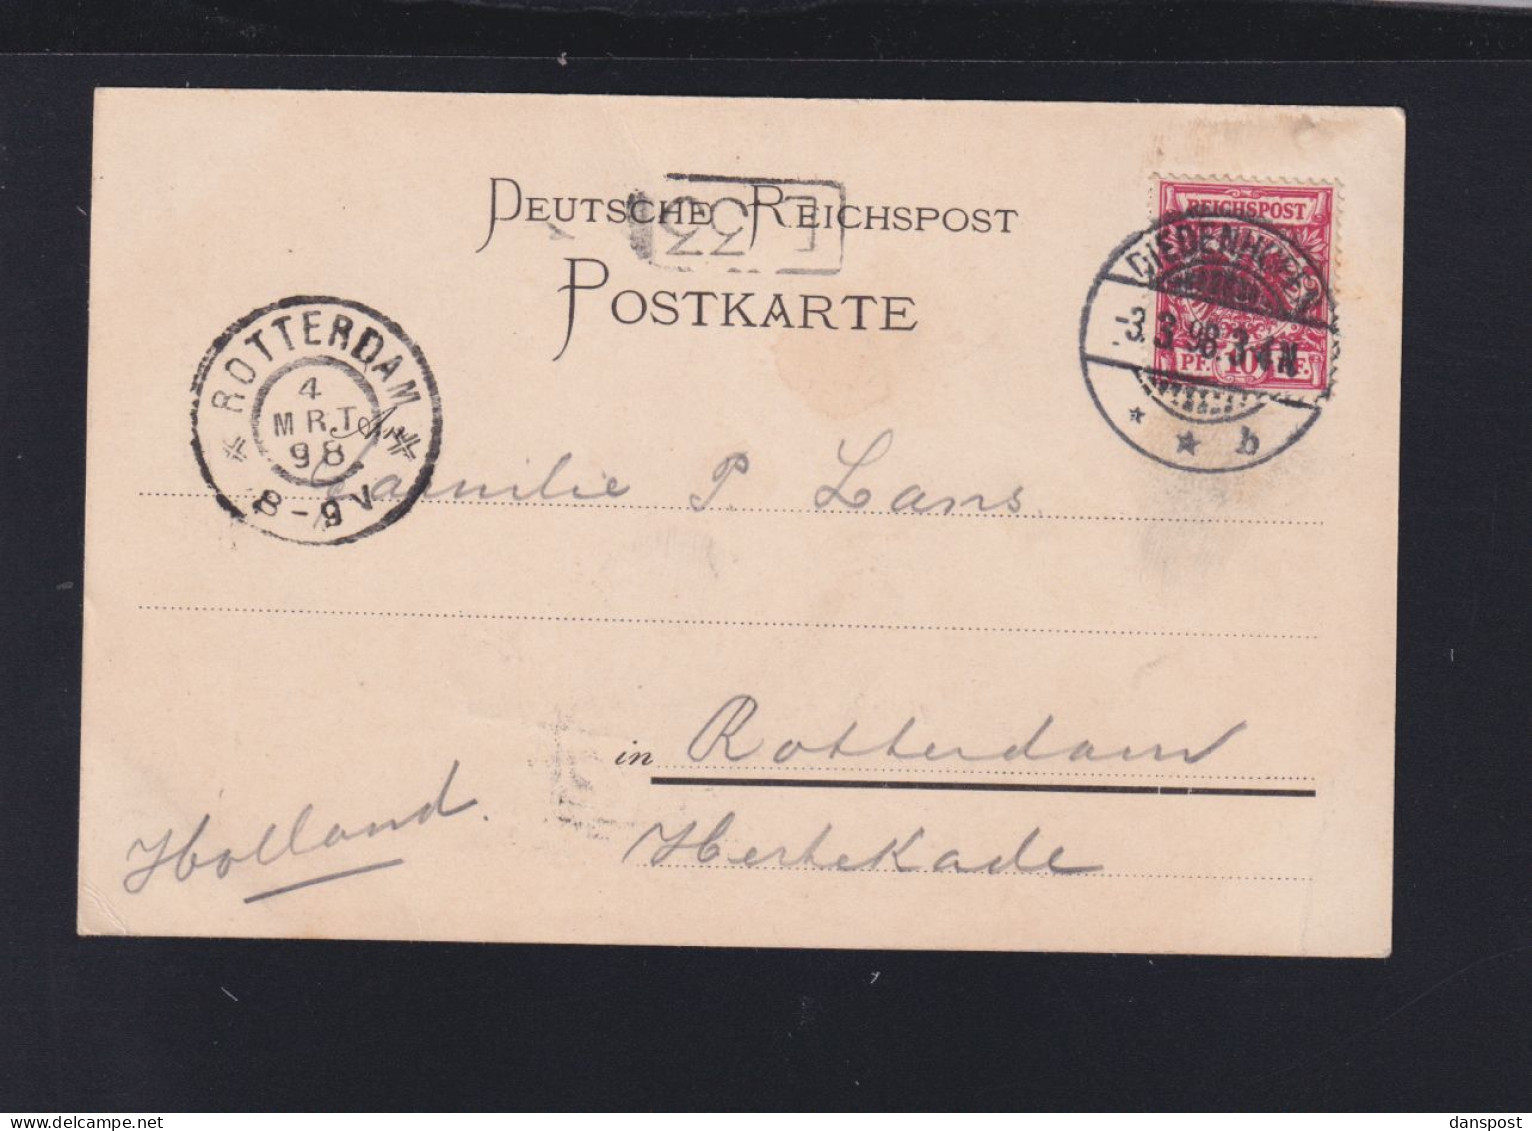 Dt. Reich Frankreich France AK Diedenhofen Marktplatz 1898 - Lothringen